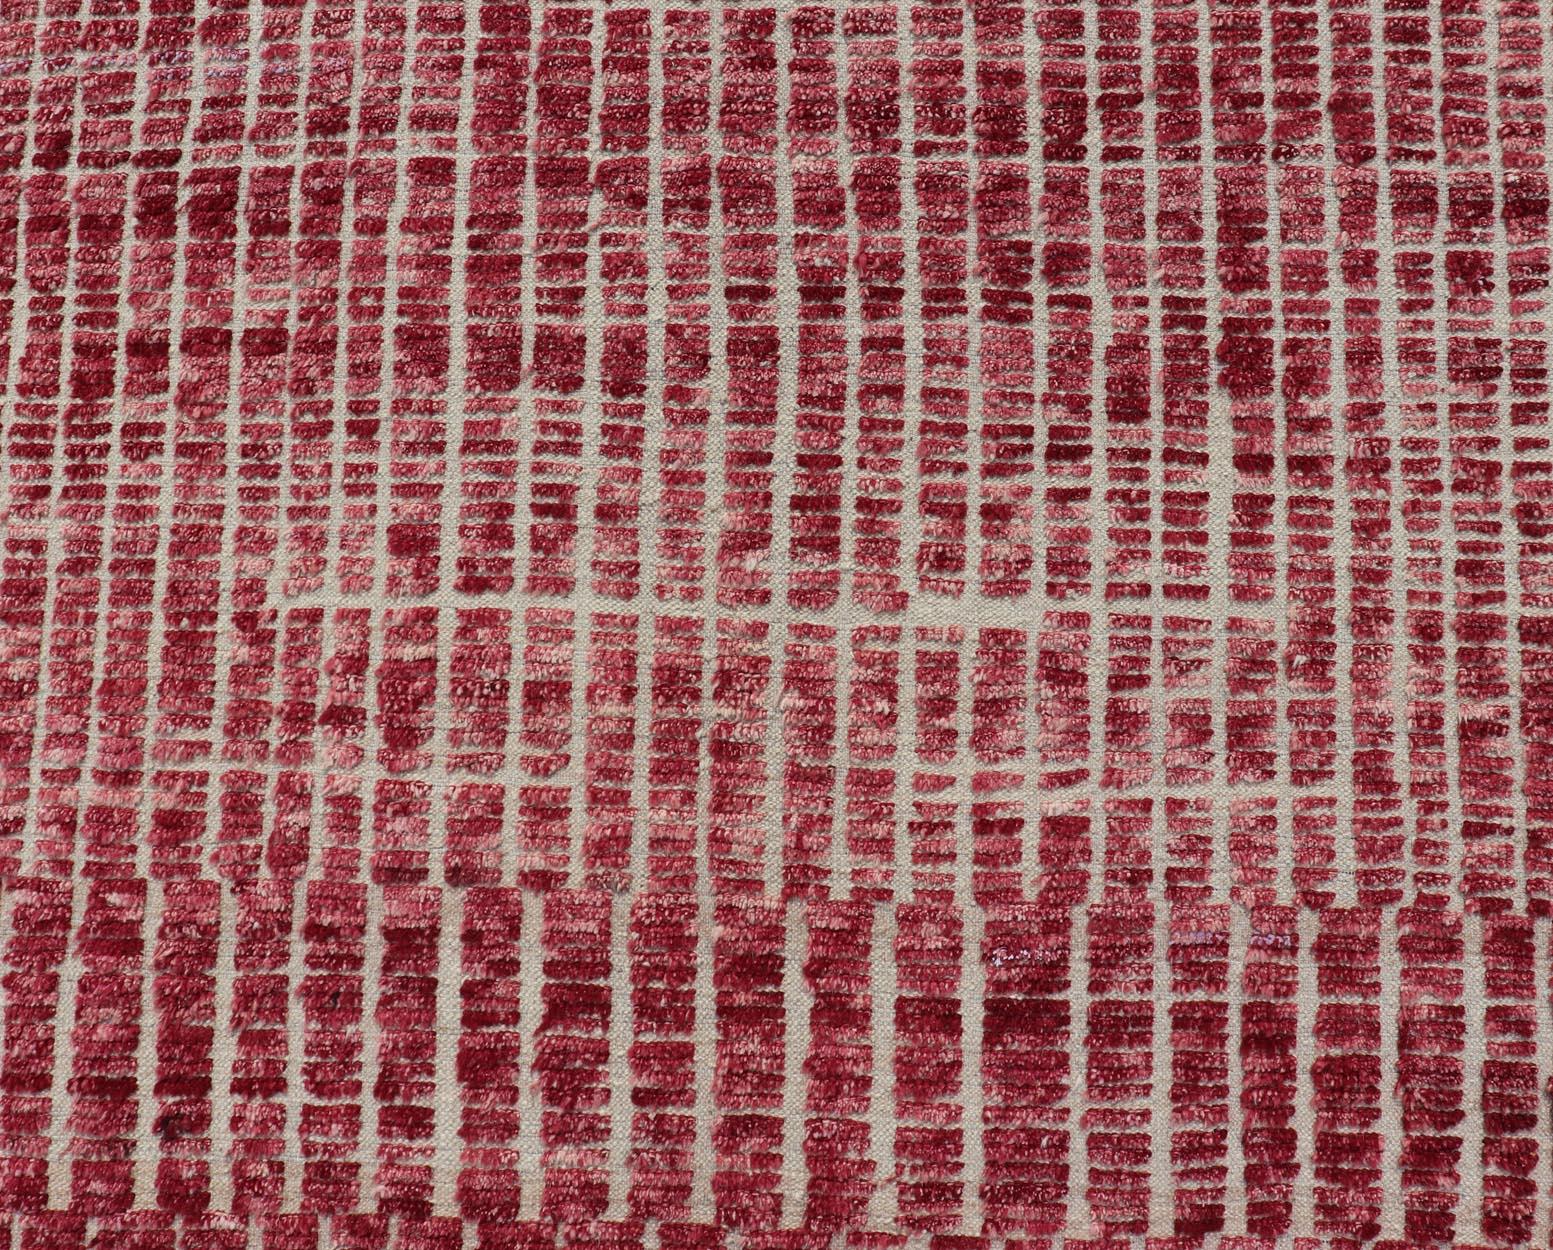 Dieser moderne, lässige marokkanische Stammesteppich wurde aus Wolle handgeknüpft. Der Teppich zeichnet sich durch ein modernes, geometrisches, lineares Design mit einem himbeerroten Farbton aus, wodurch er hervorragend zu einer Vielzahl von